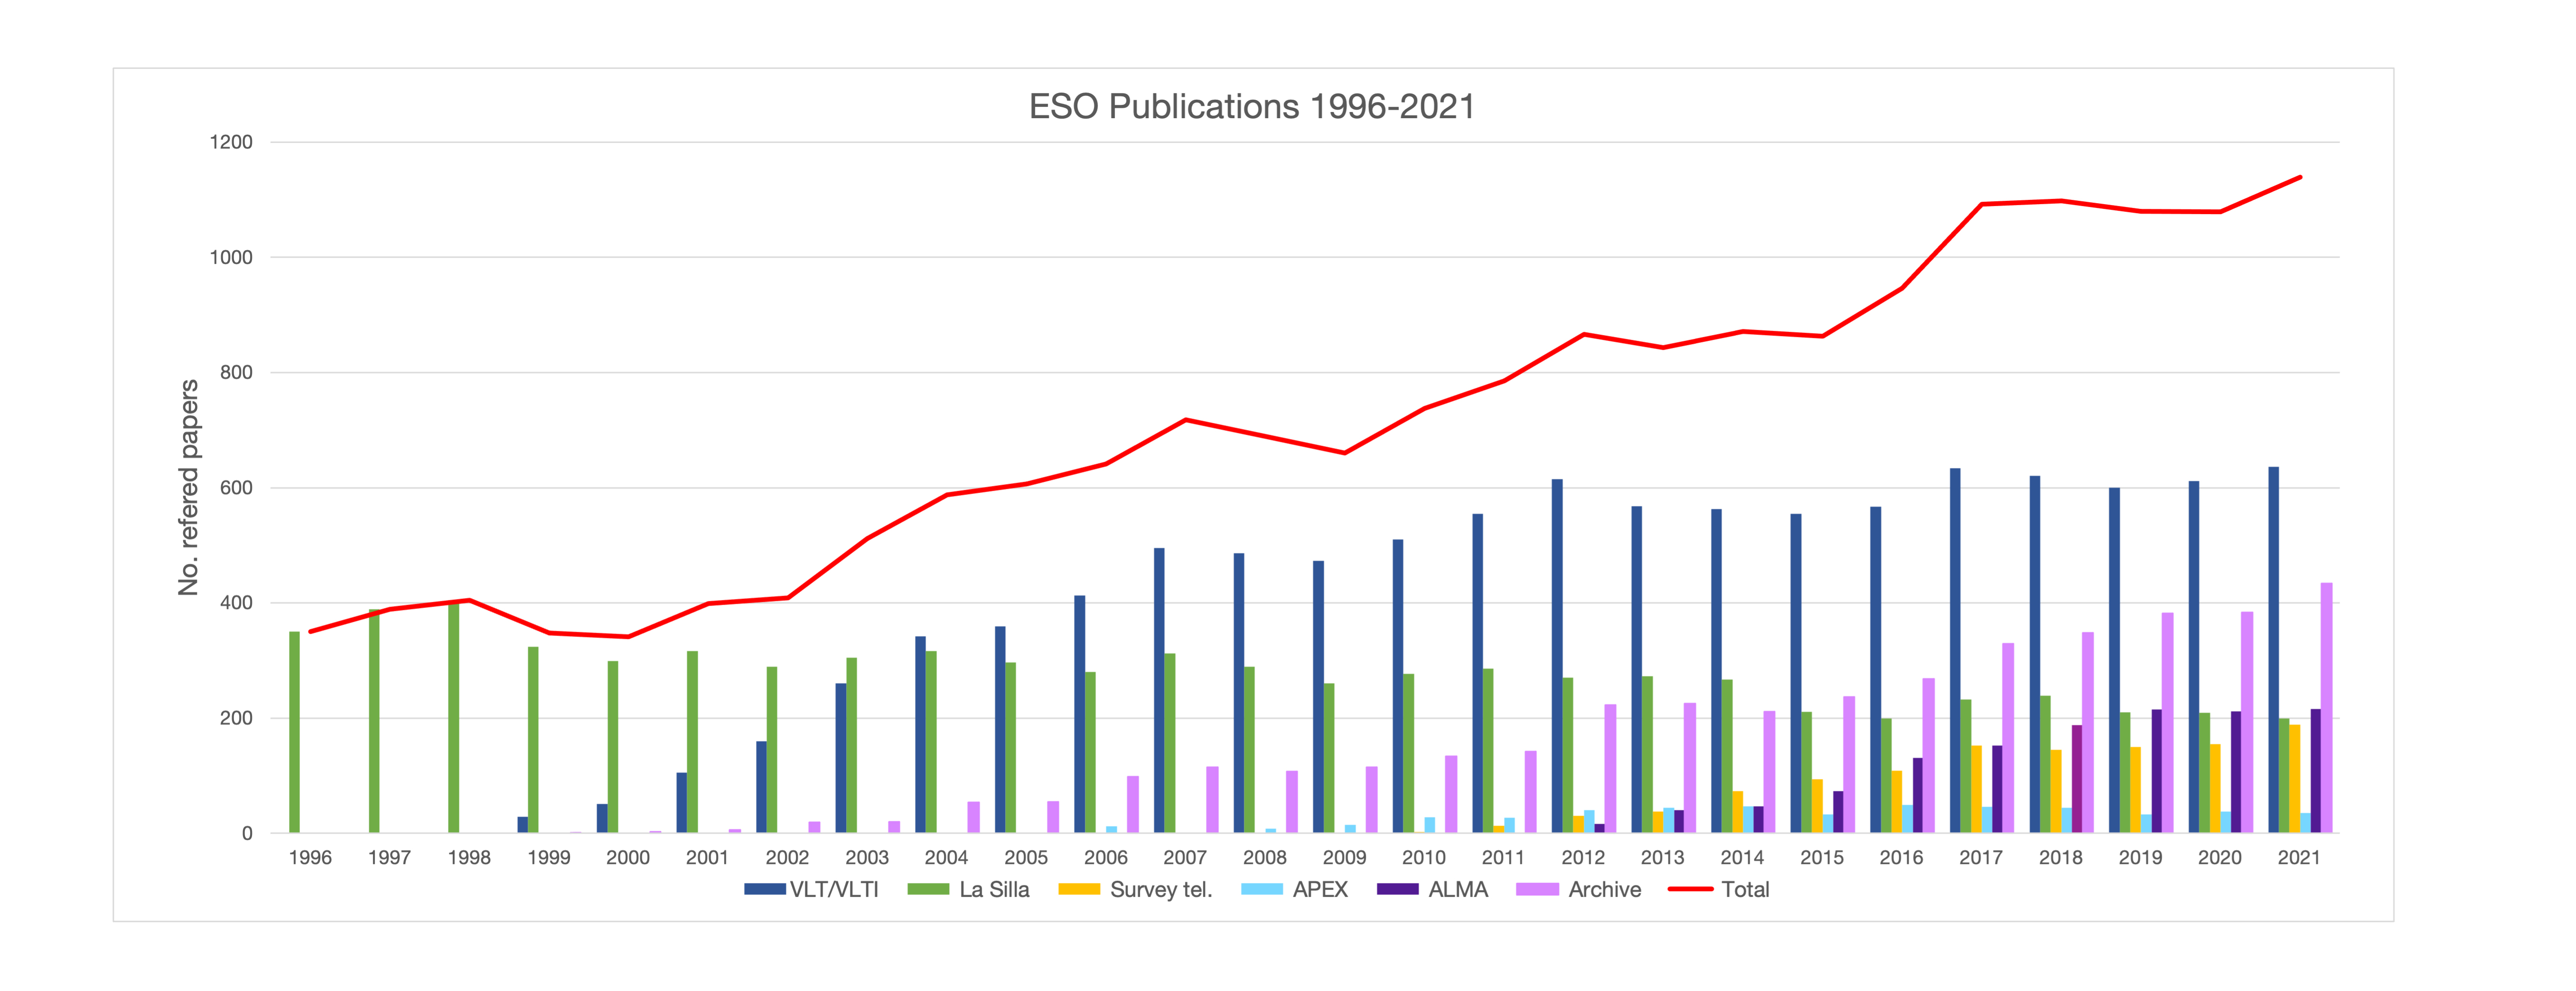 Anzahl der Veröffentlichungen auf der Grundlage von Daten, die an ESO-Observatorien gewonnen wurden (1996-2021)